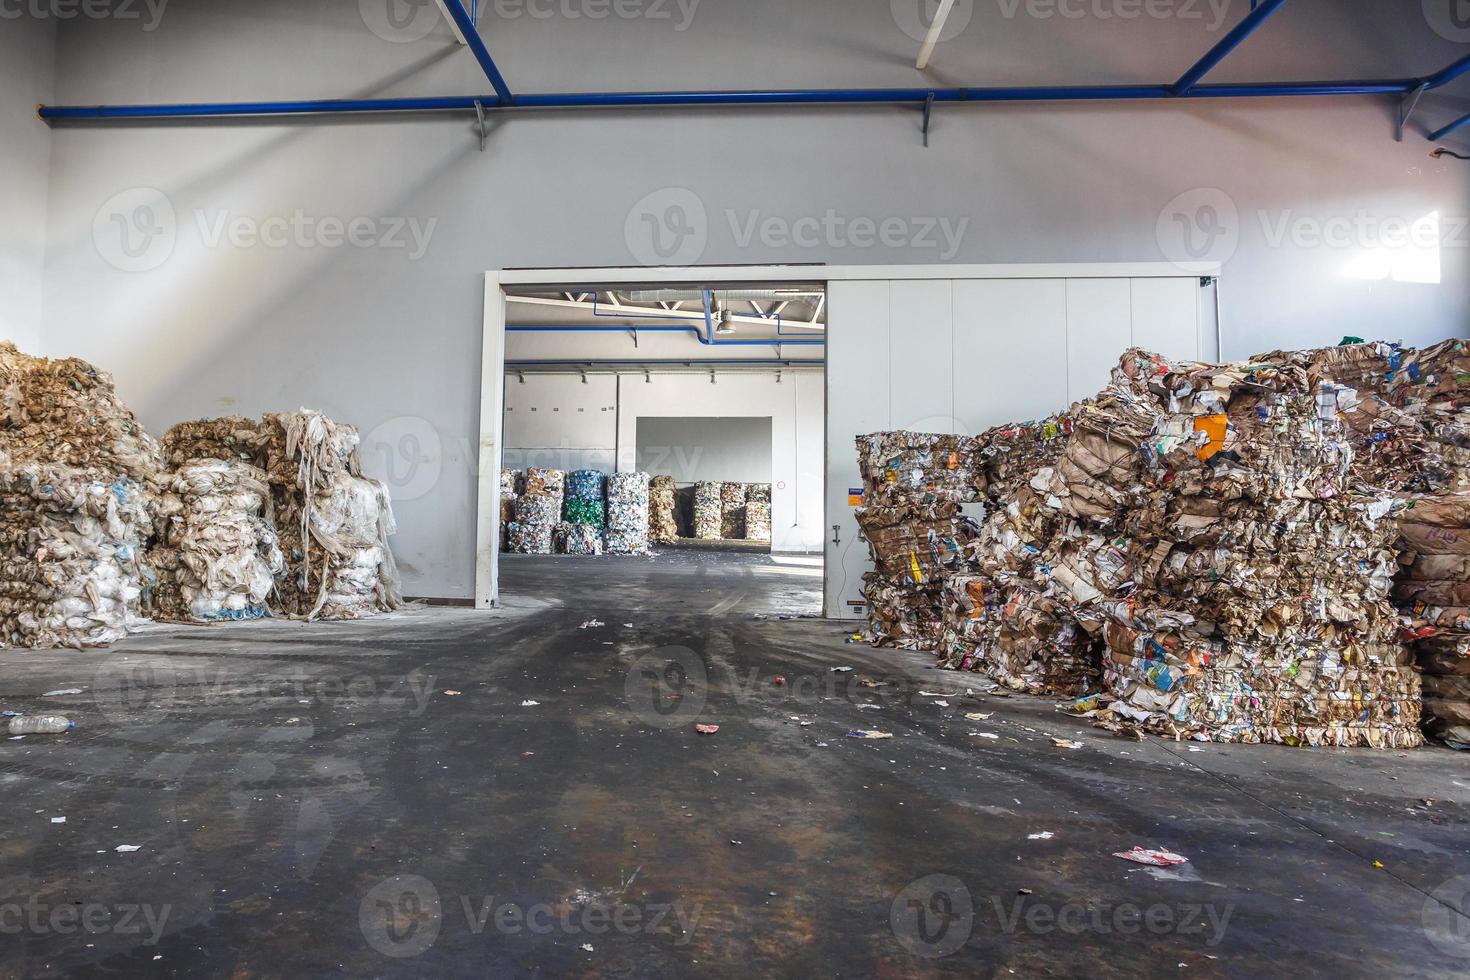 plastbalar med skräp vid avfallsbehandlingsanläggningen. återvinning separat och förvaring av sopor för vidare omhändertagande, sopsortering. verksamhet för sortering och bearbetning av avfall. foto